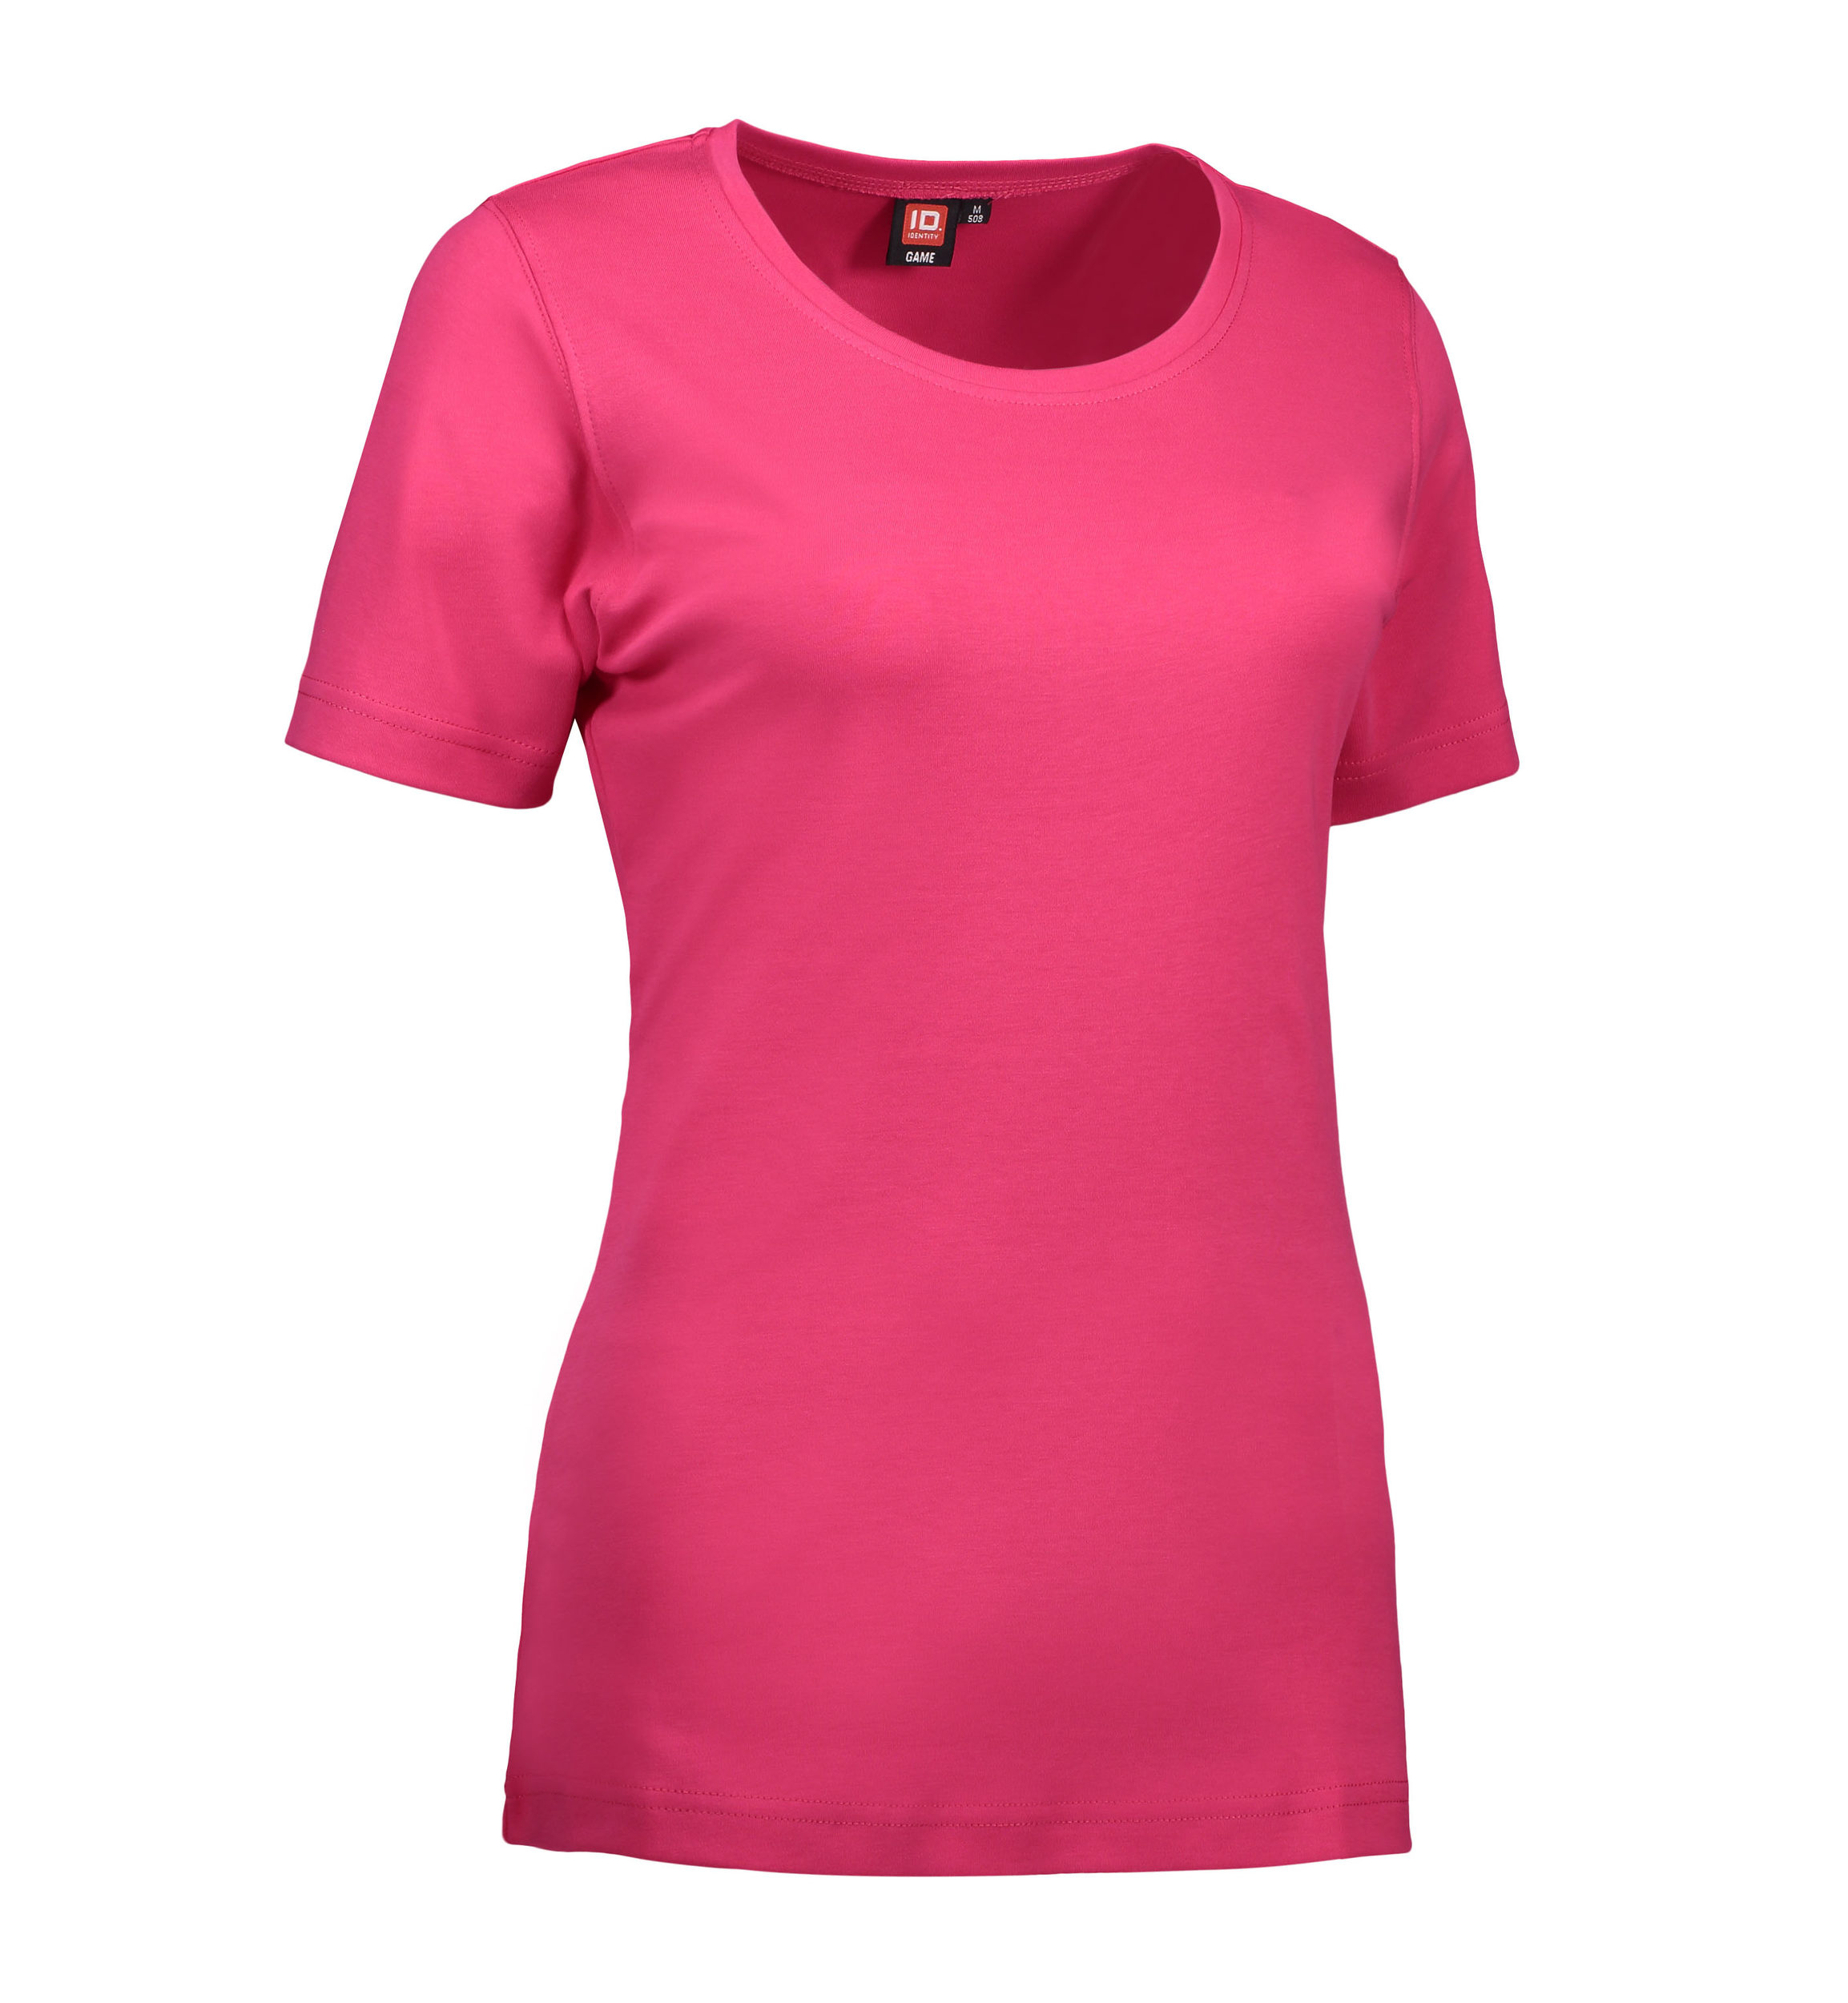 Billede af Dame t-shirt med rund hals i pink - S hos Sygeplejebutikken.dk